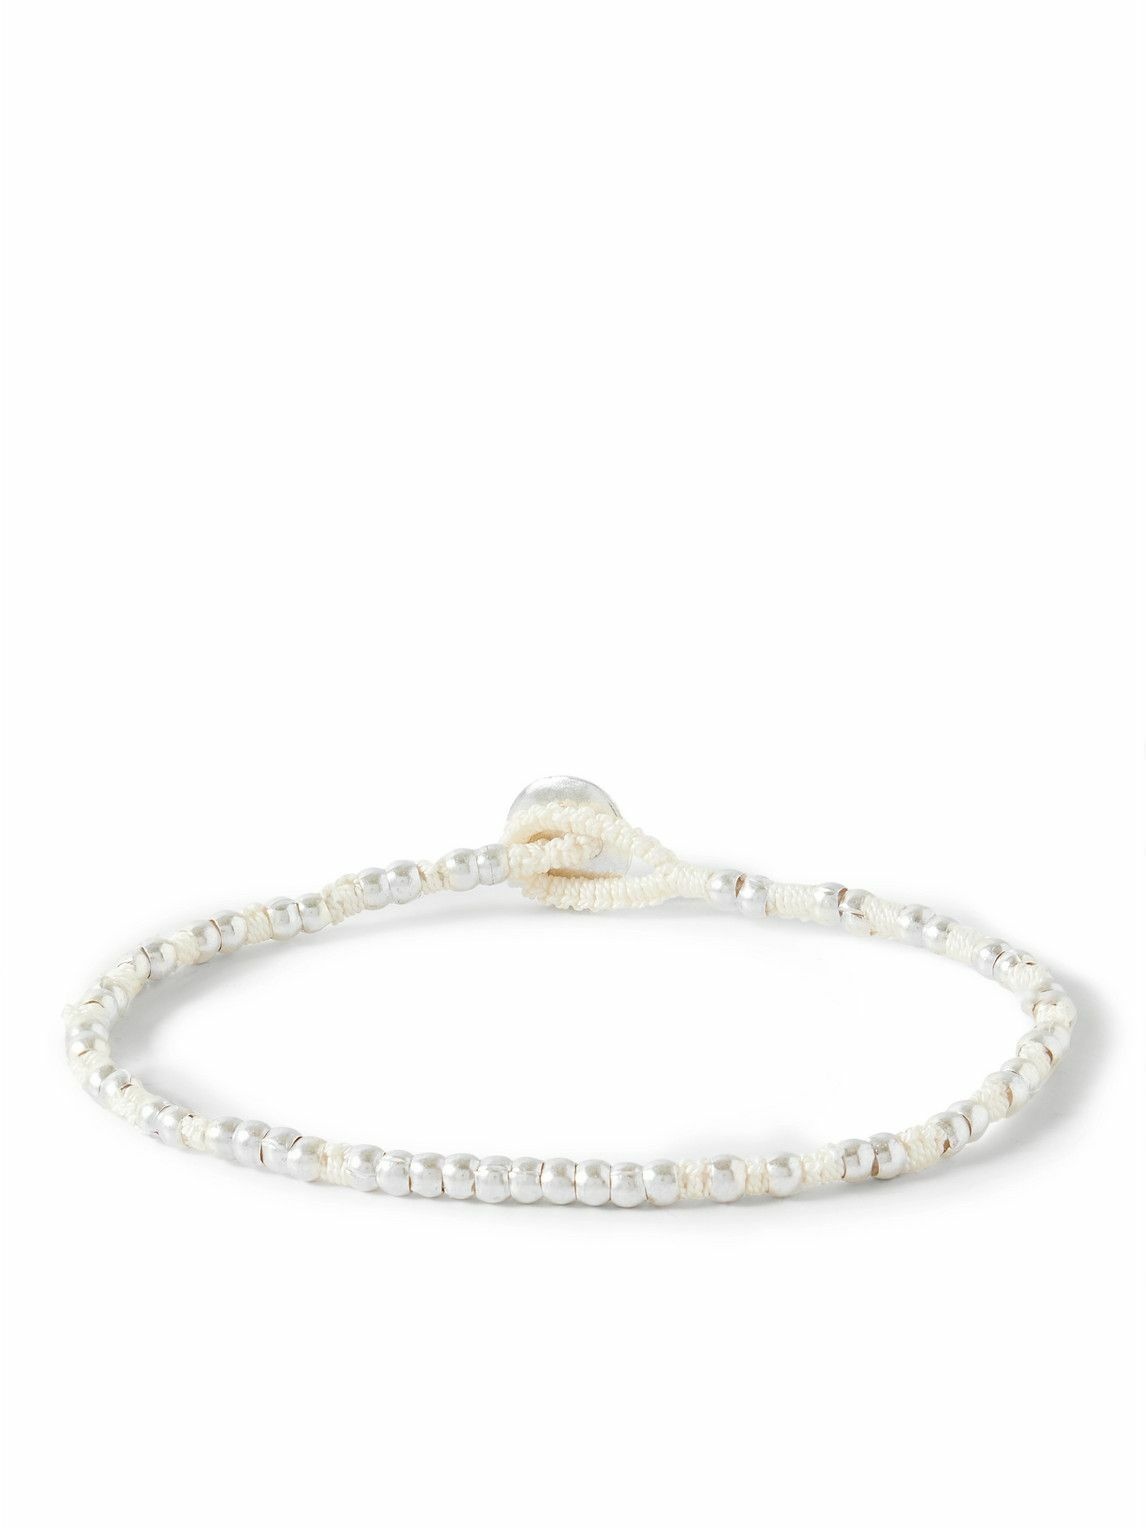 Photo: Mikia - Silver and Cord Bracelet - White